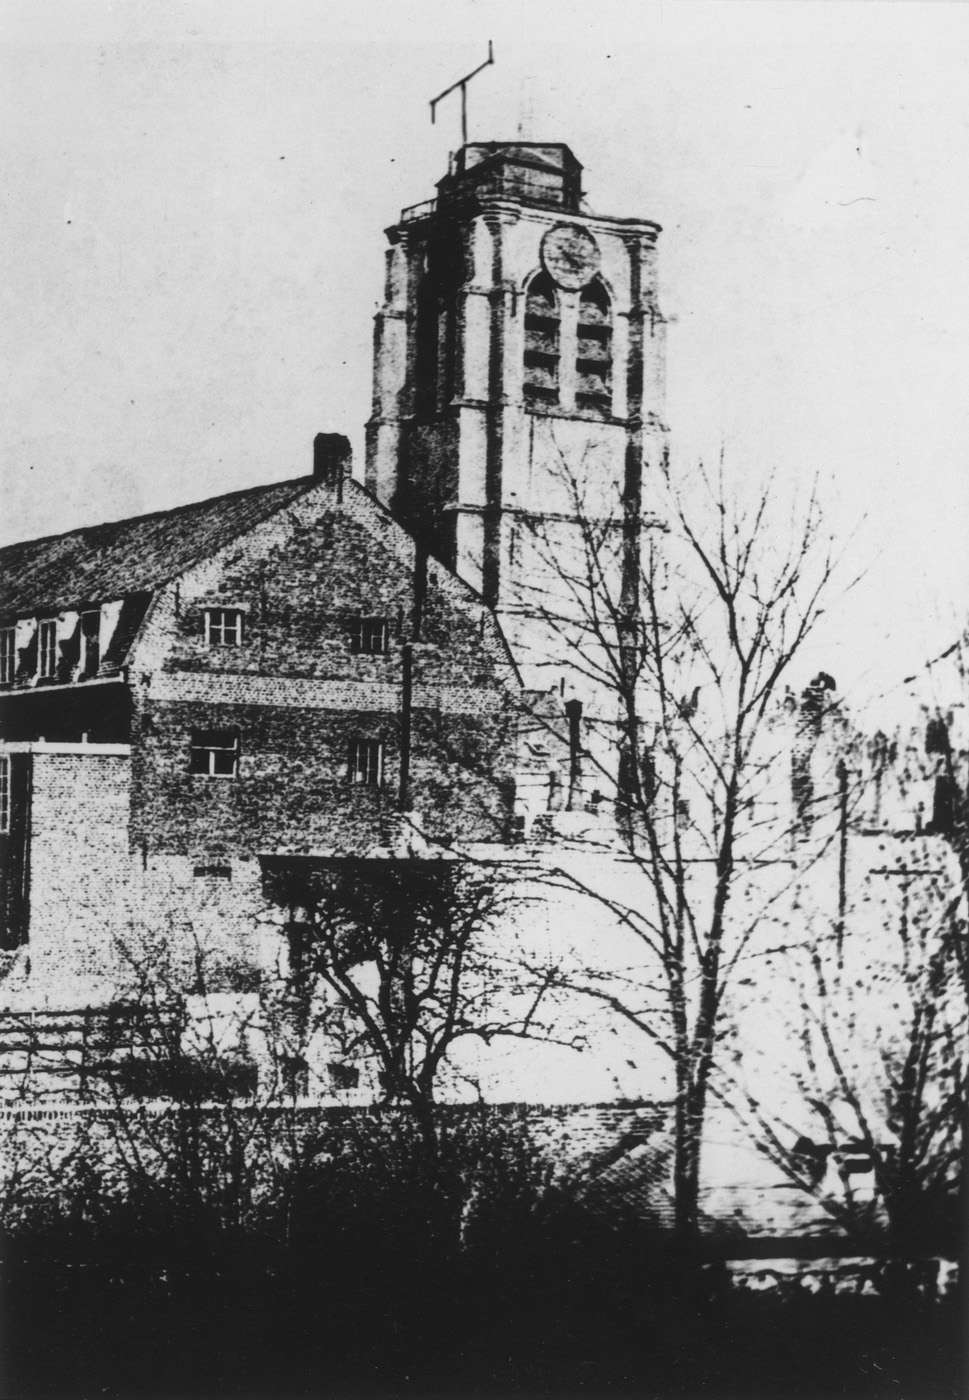 Photographie du clocher de l'église Saint-Catherine de Lille surmonté d'un télégraphe.